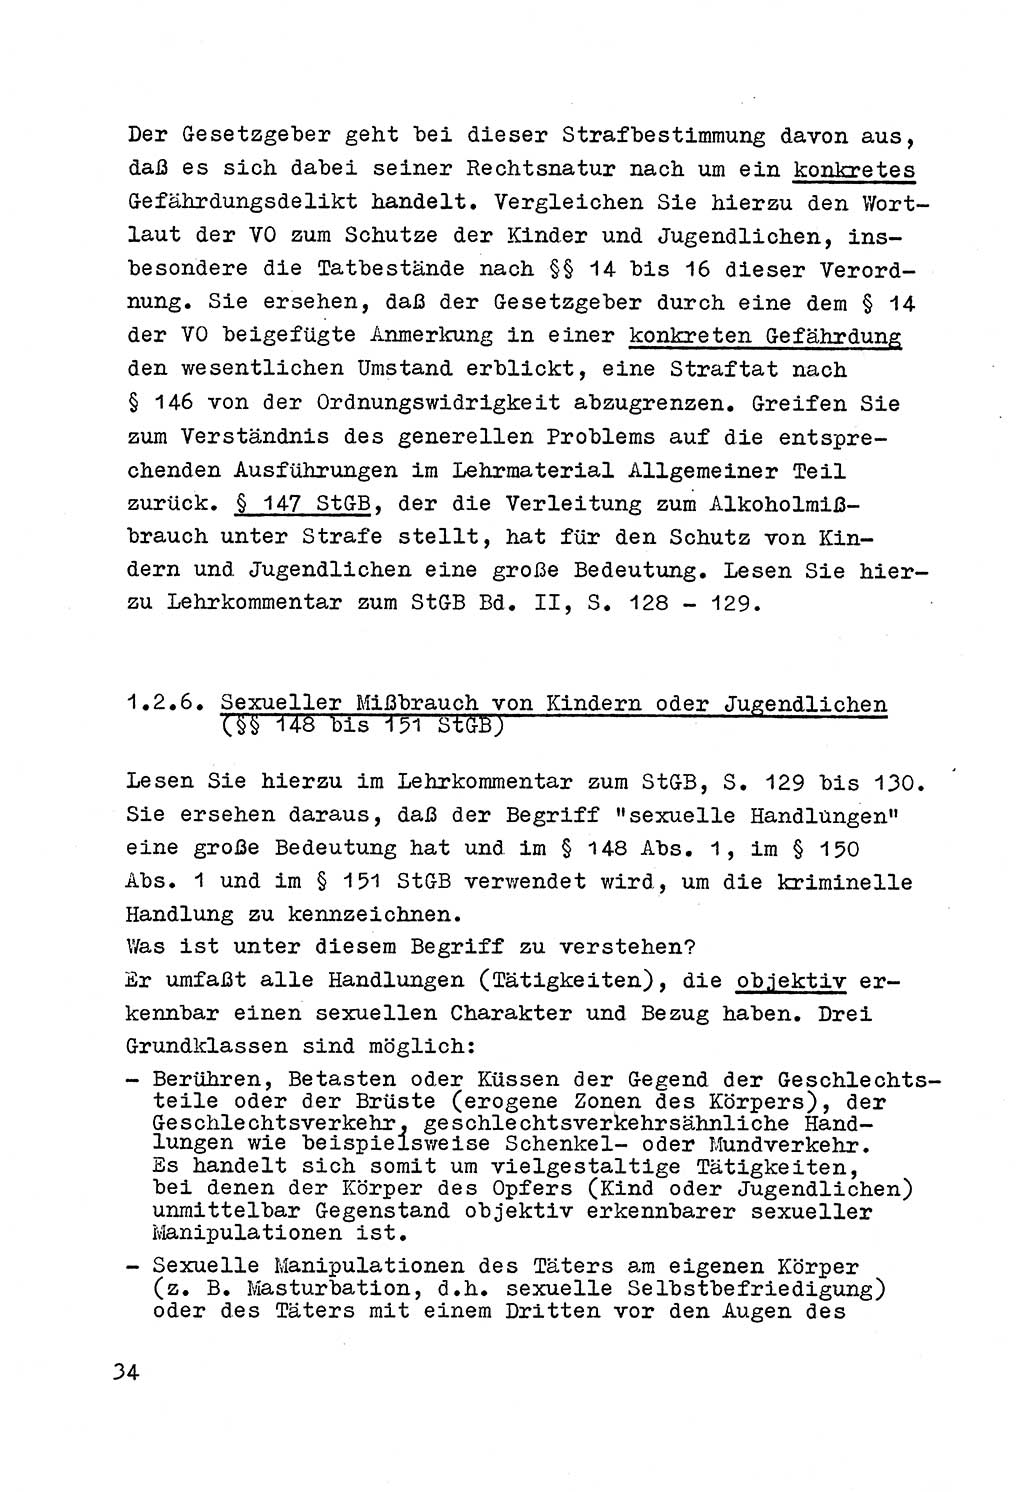 Strafrecht der DDR (Deutsche Demokratische Republik), Besonderer Teil, Lehrmaterial, Heft 4 1969, Seite 34 (Strafr. DDR BT Lehrmat. H. 4 1969, S. 34)